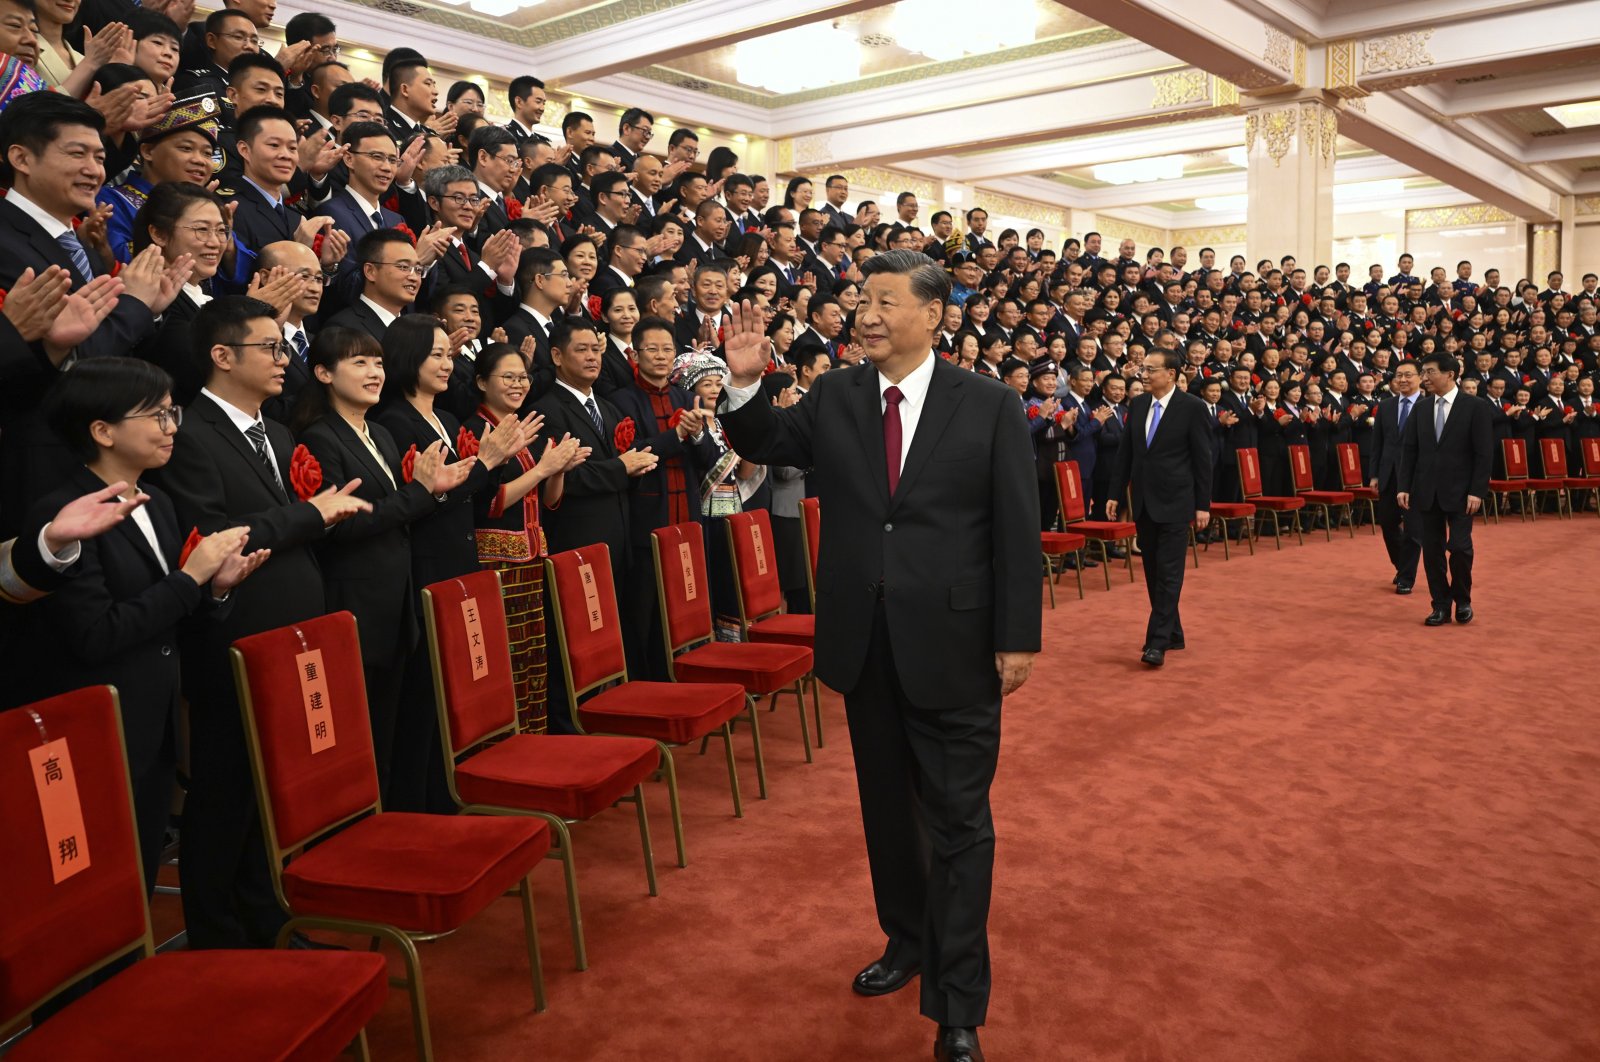 Kemiskinan, iklim, ruang: pencapaian 10 tahun Xi di Tiongkok